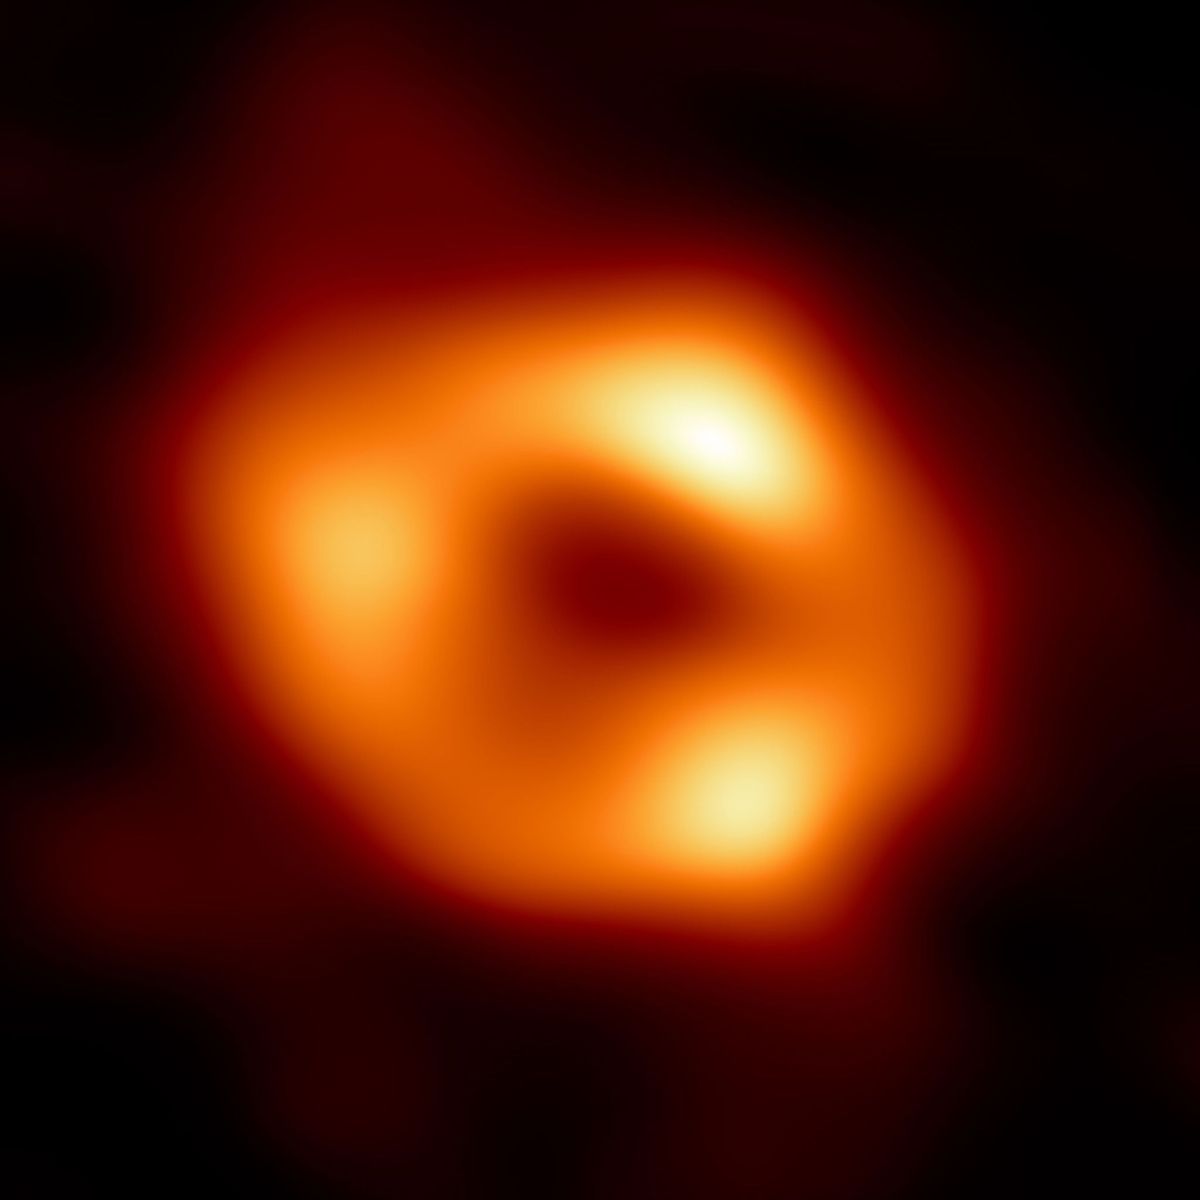 De eerste foto van de gloeiendhete materie rond Sagittarius A het superzware zwarte gat in het centrum van de Melkweg Uit het zwarte gat zelf kan geen licht ontsnappen